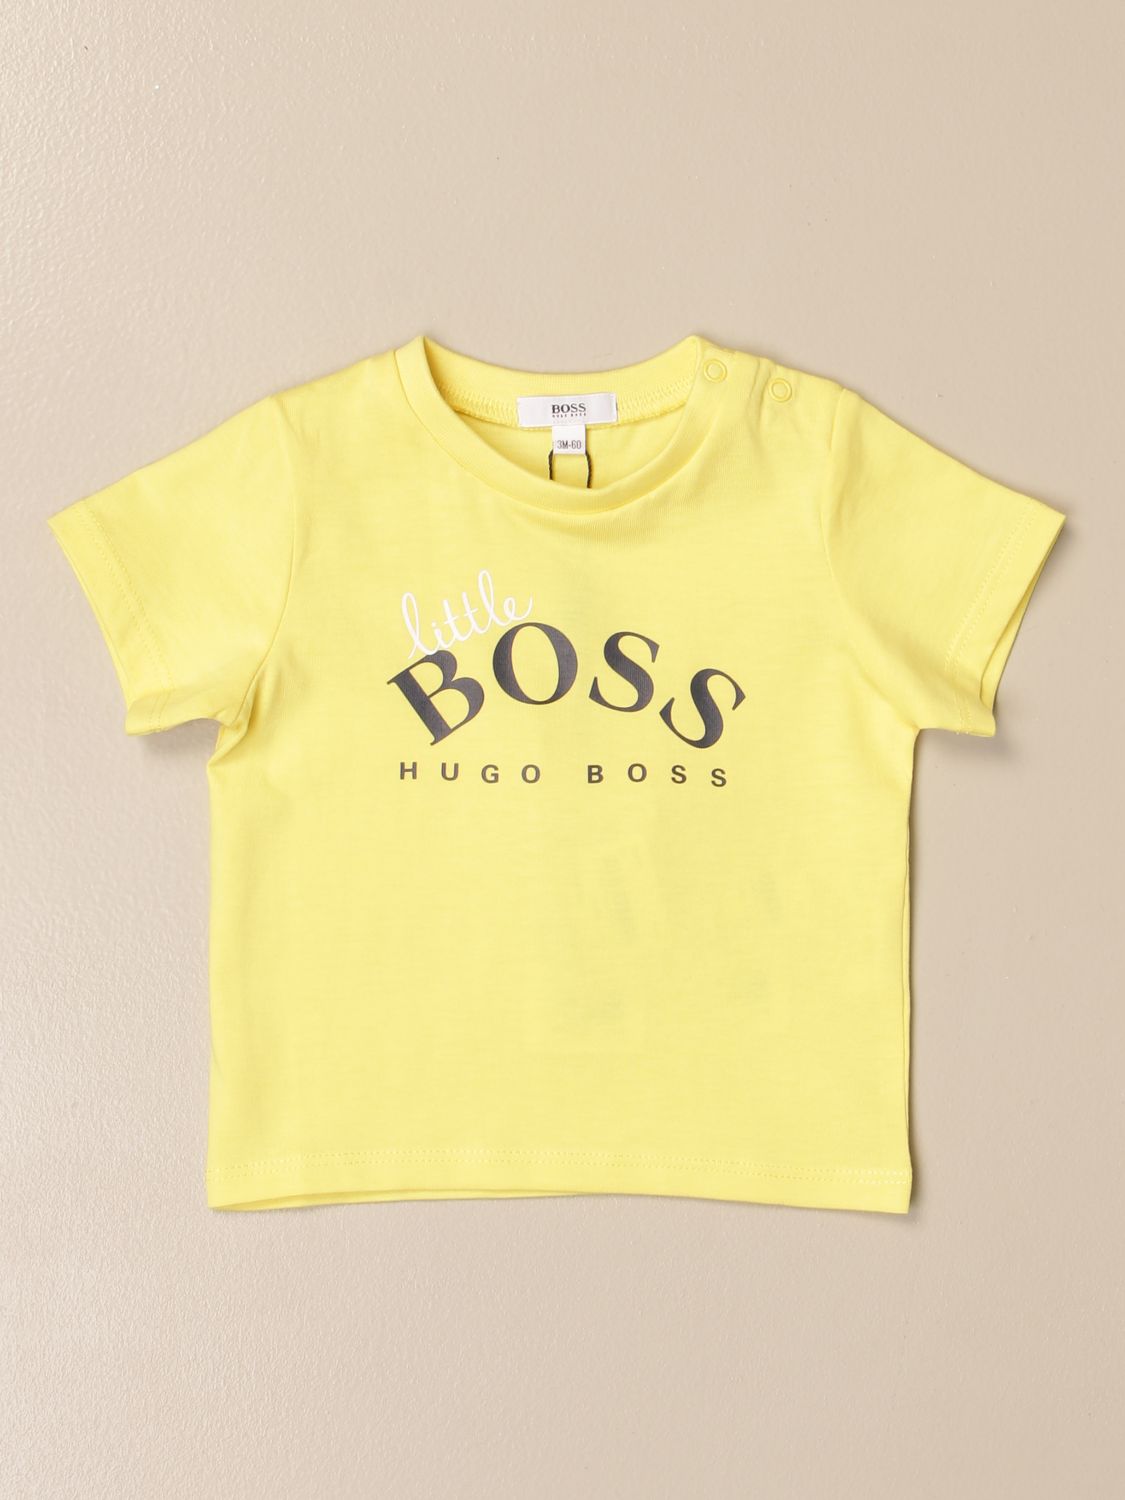 hugo boss yellow t shirt